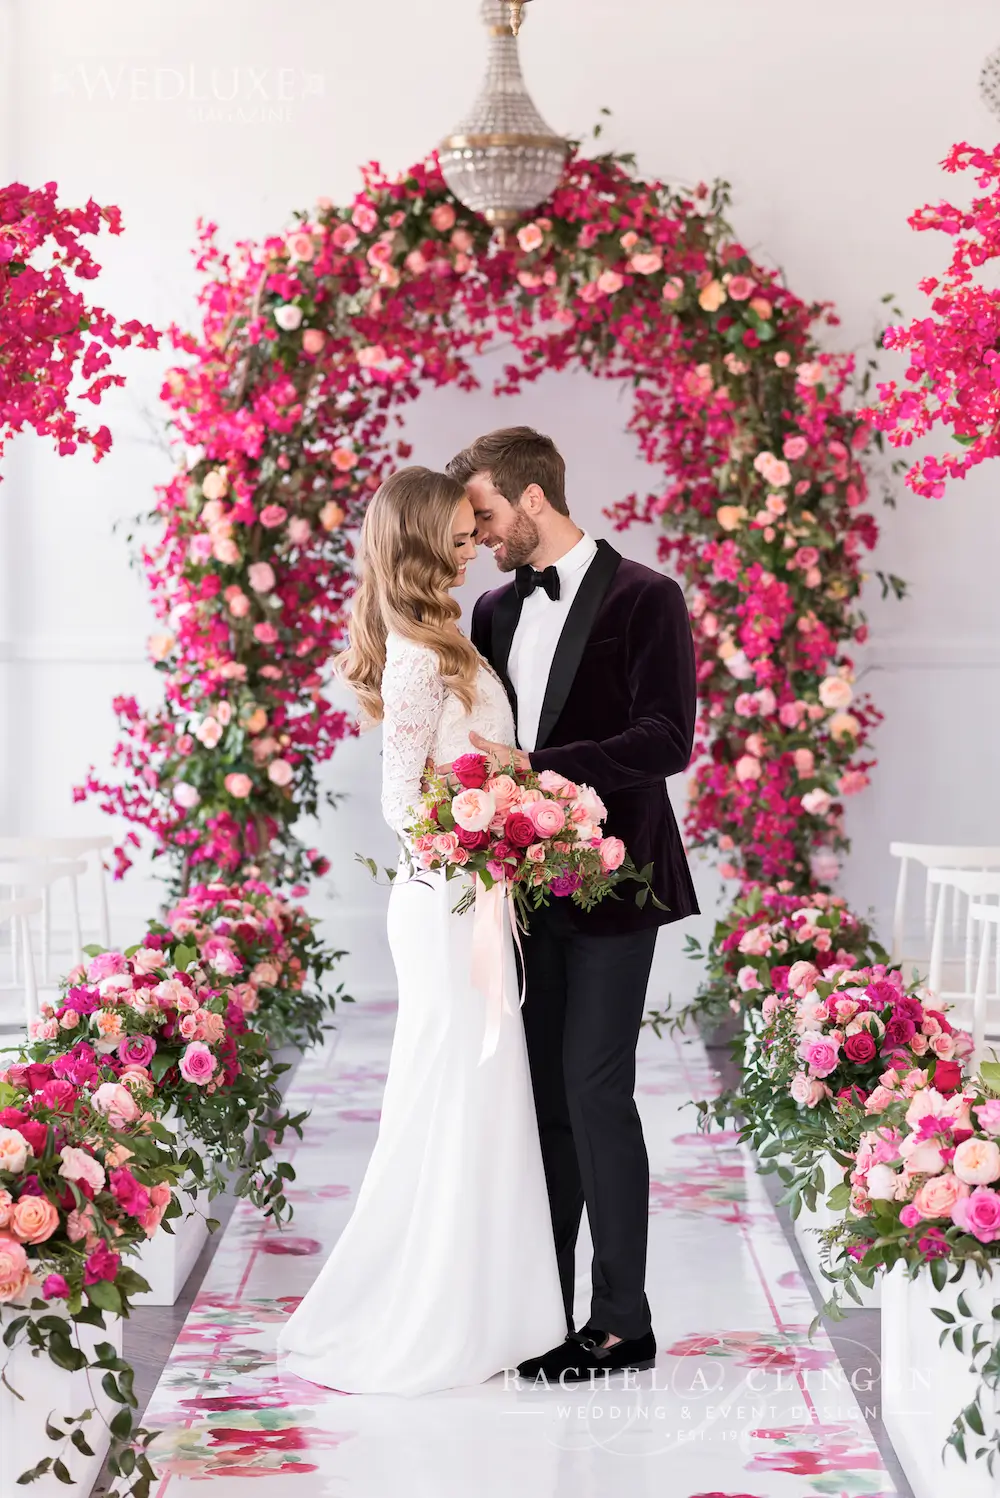 foto de noivos em frente ao altar de casamento com decoração florida em tons de rosa